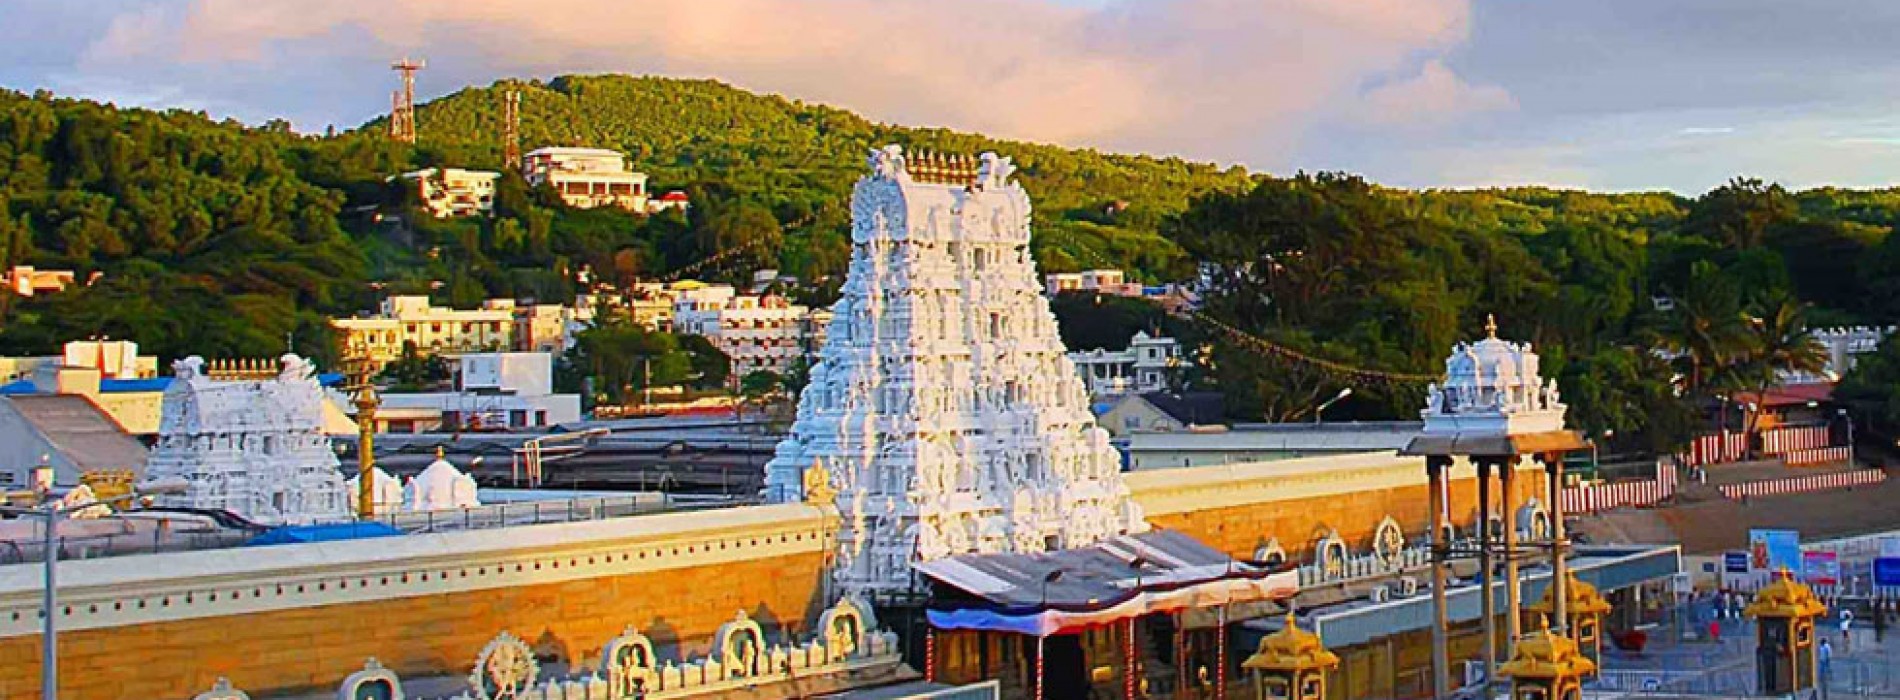 AP Tourism promotes Srikalahasteeswara Temple as a part of Tirupati and beyond